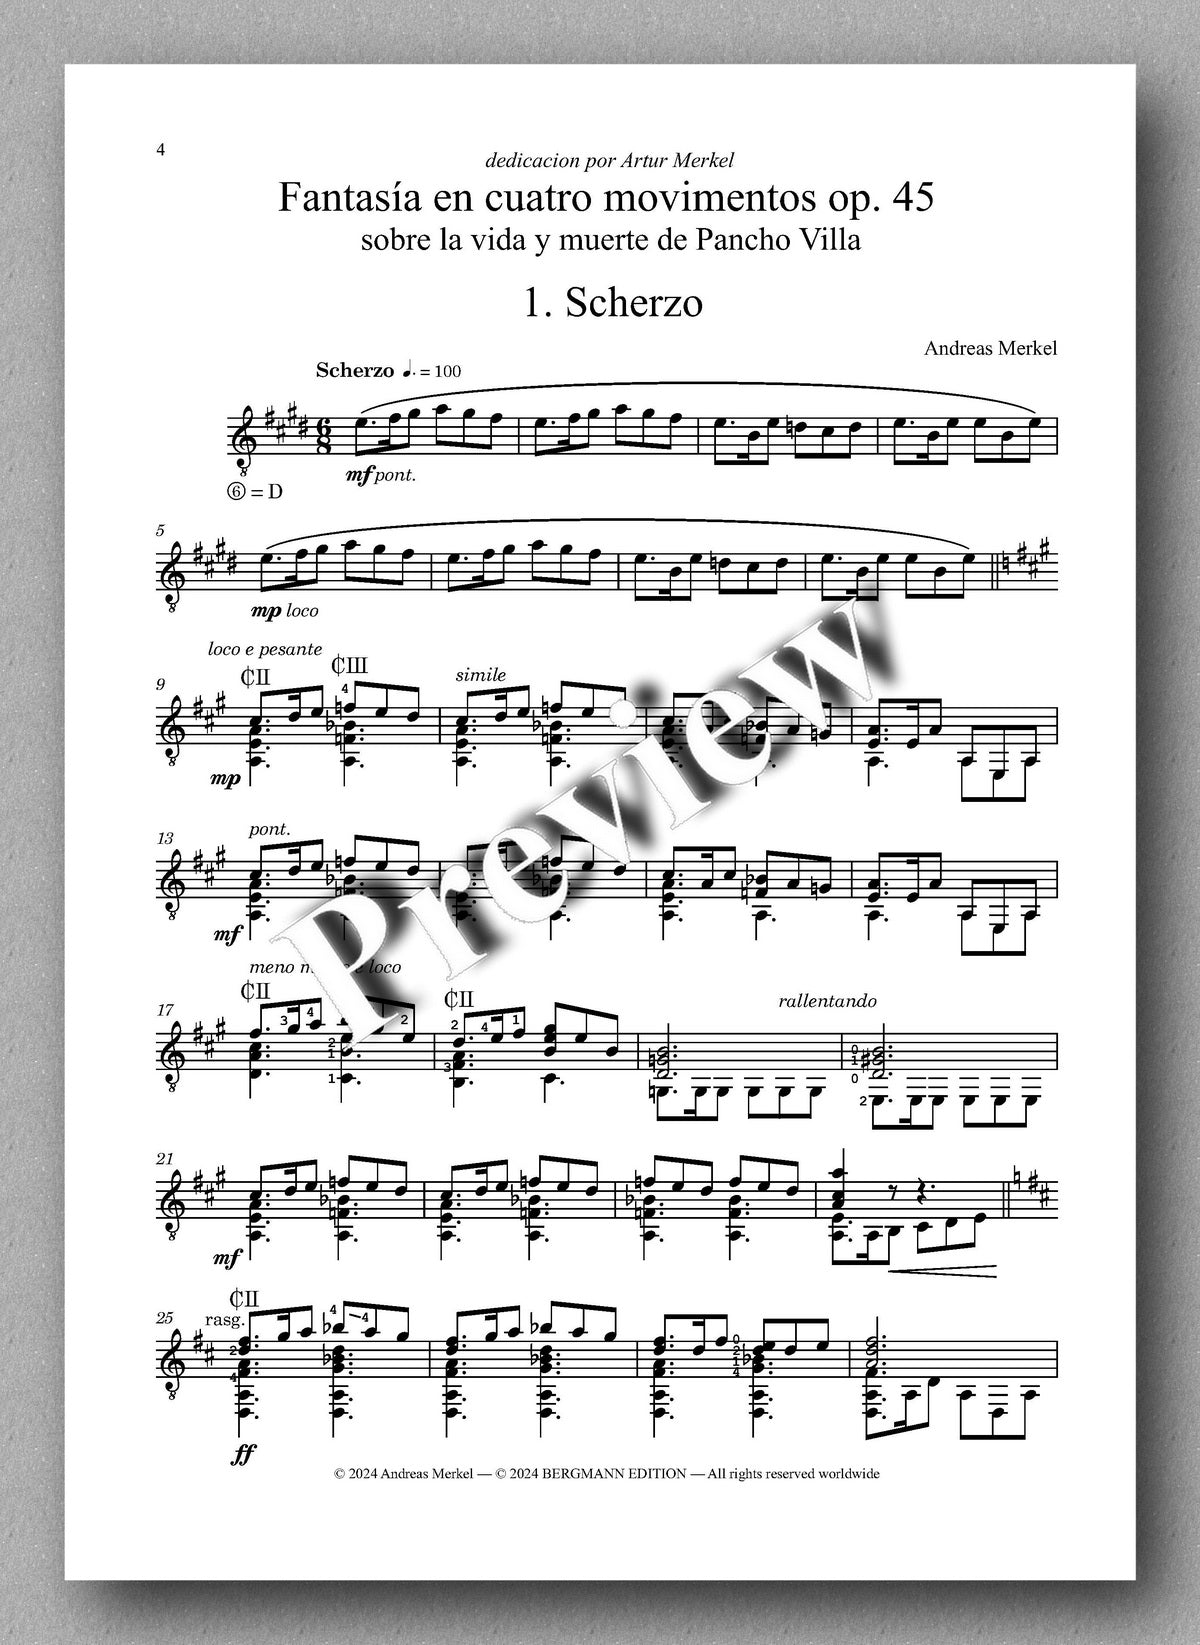 Andreas Merkel, Fantasía en cuatro movimentos, Op. 45 - preview of the music score 